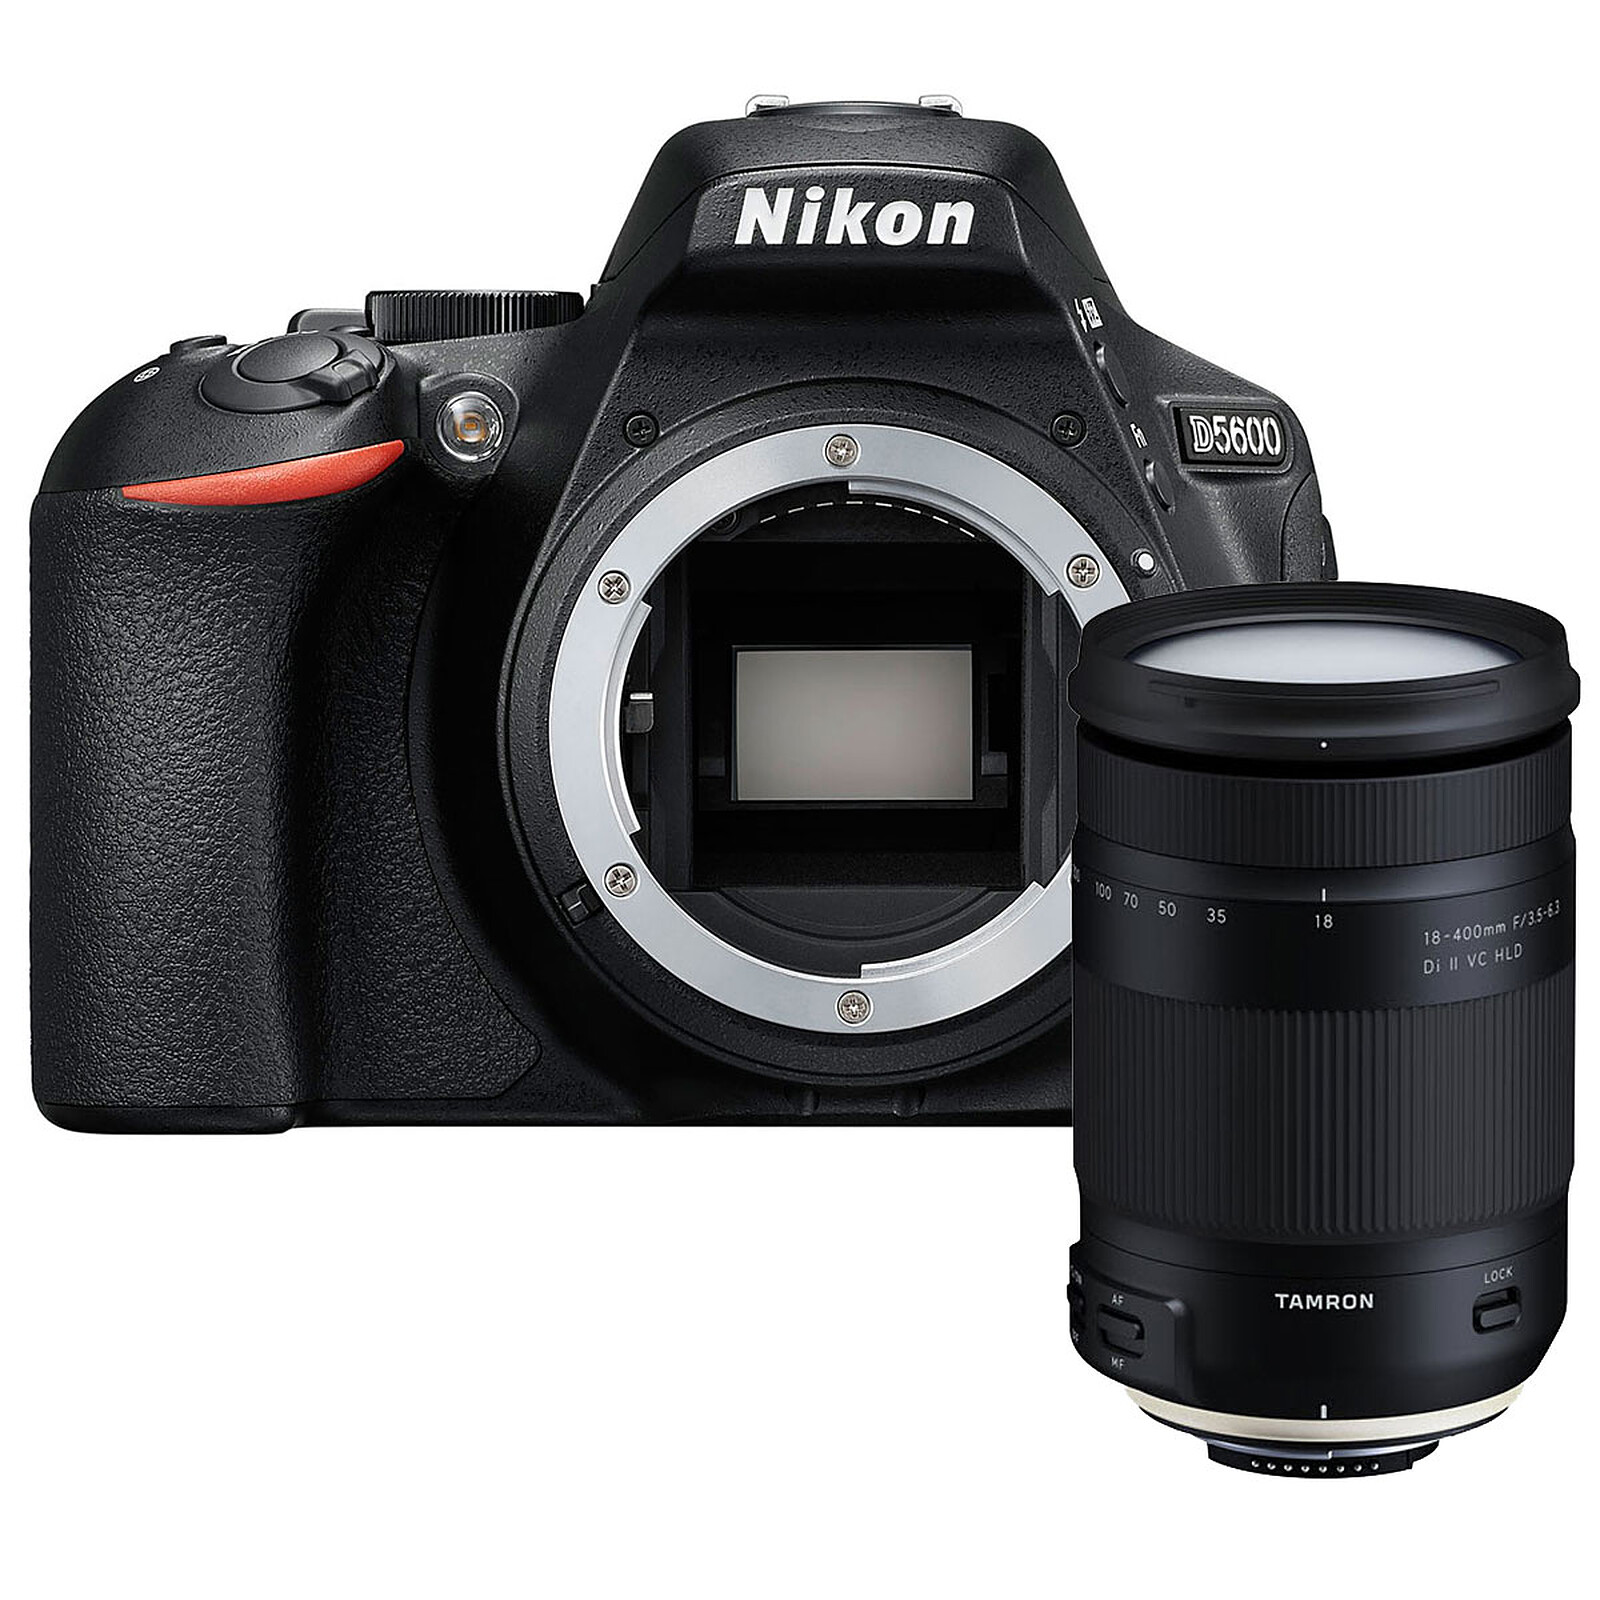 Nikon D5600 + Tamron 18-400mm f/3.5-6.3 Di II VC HLD